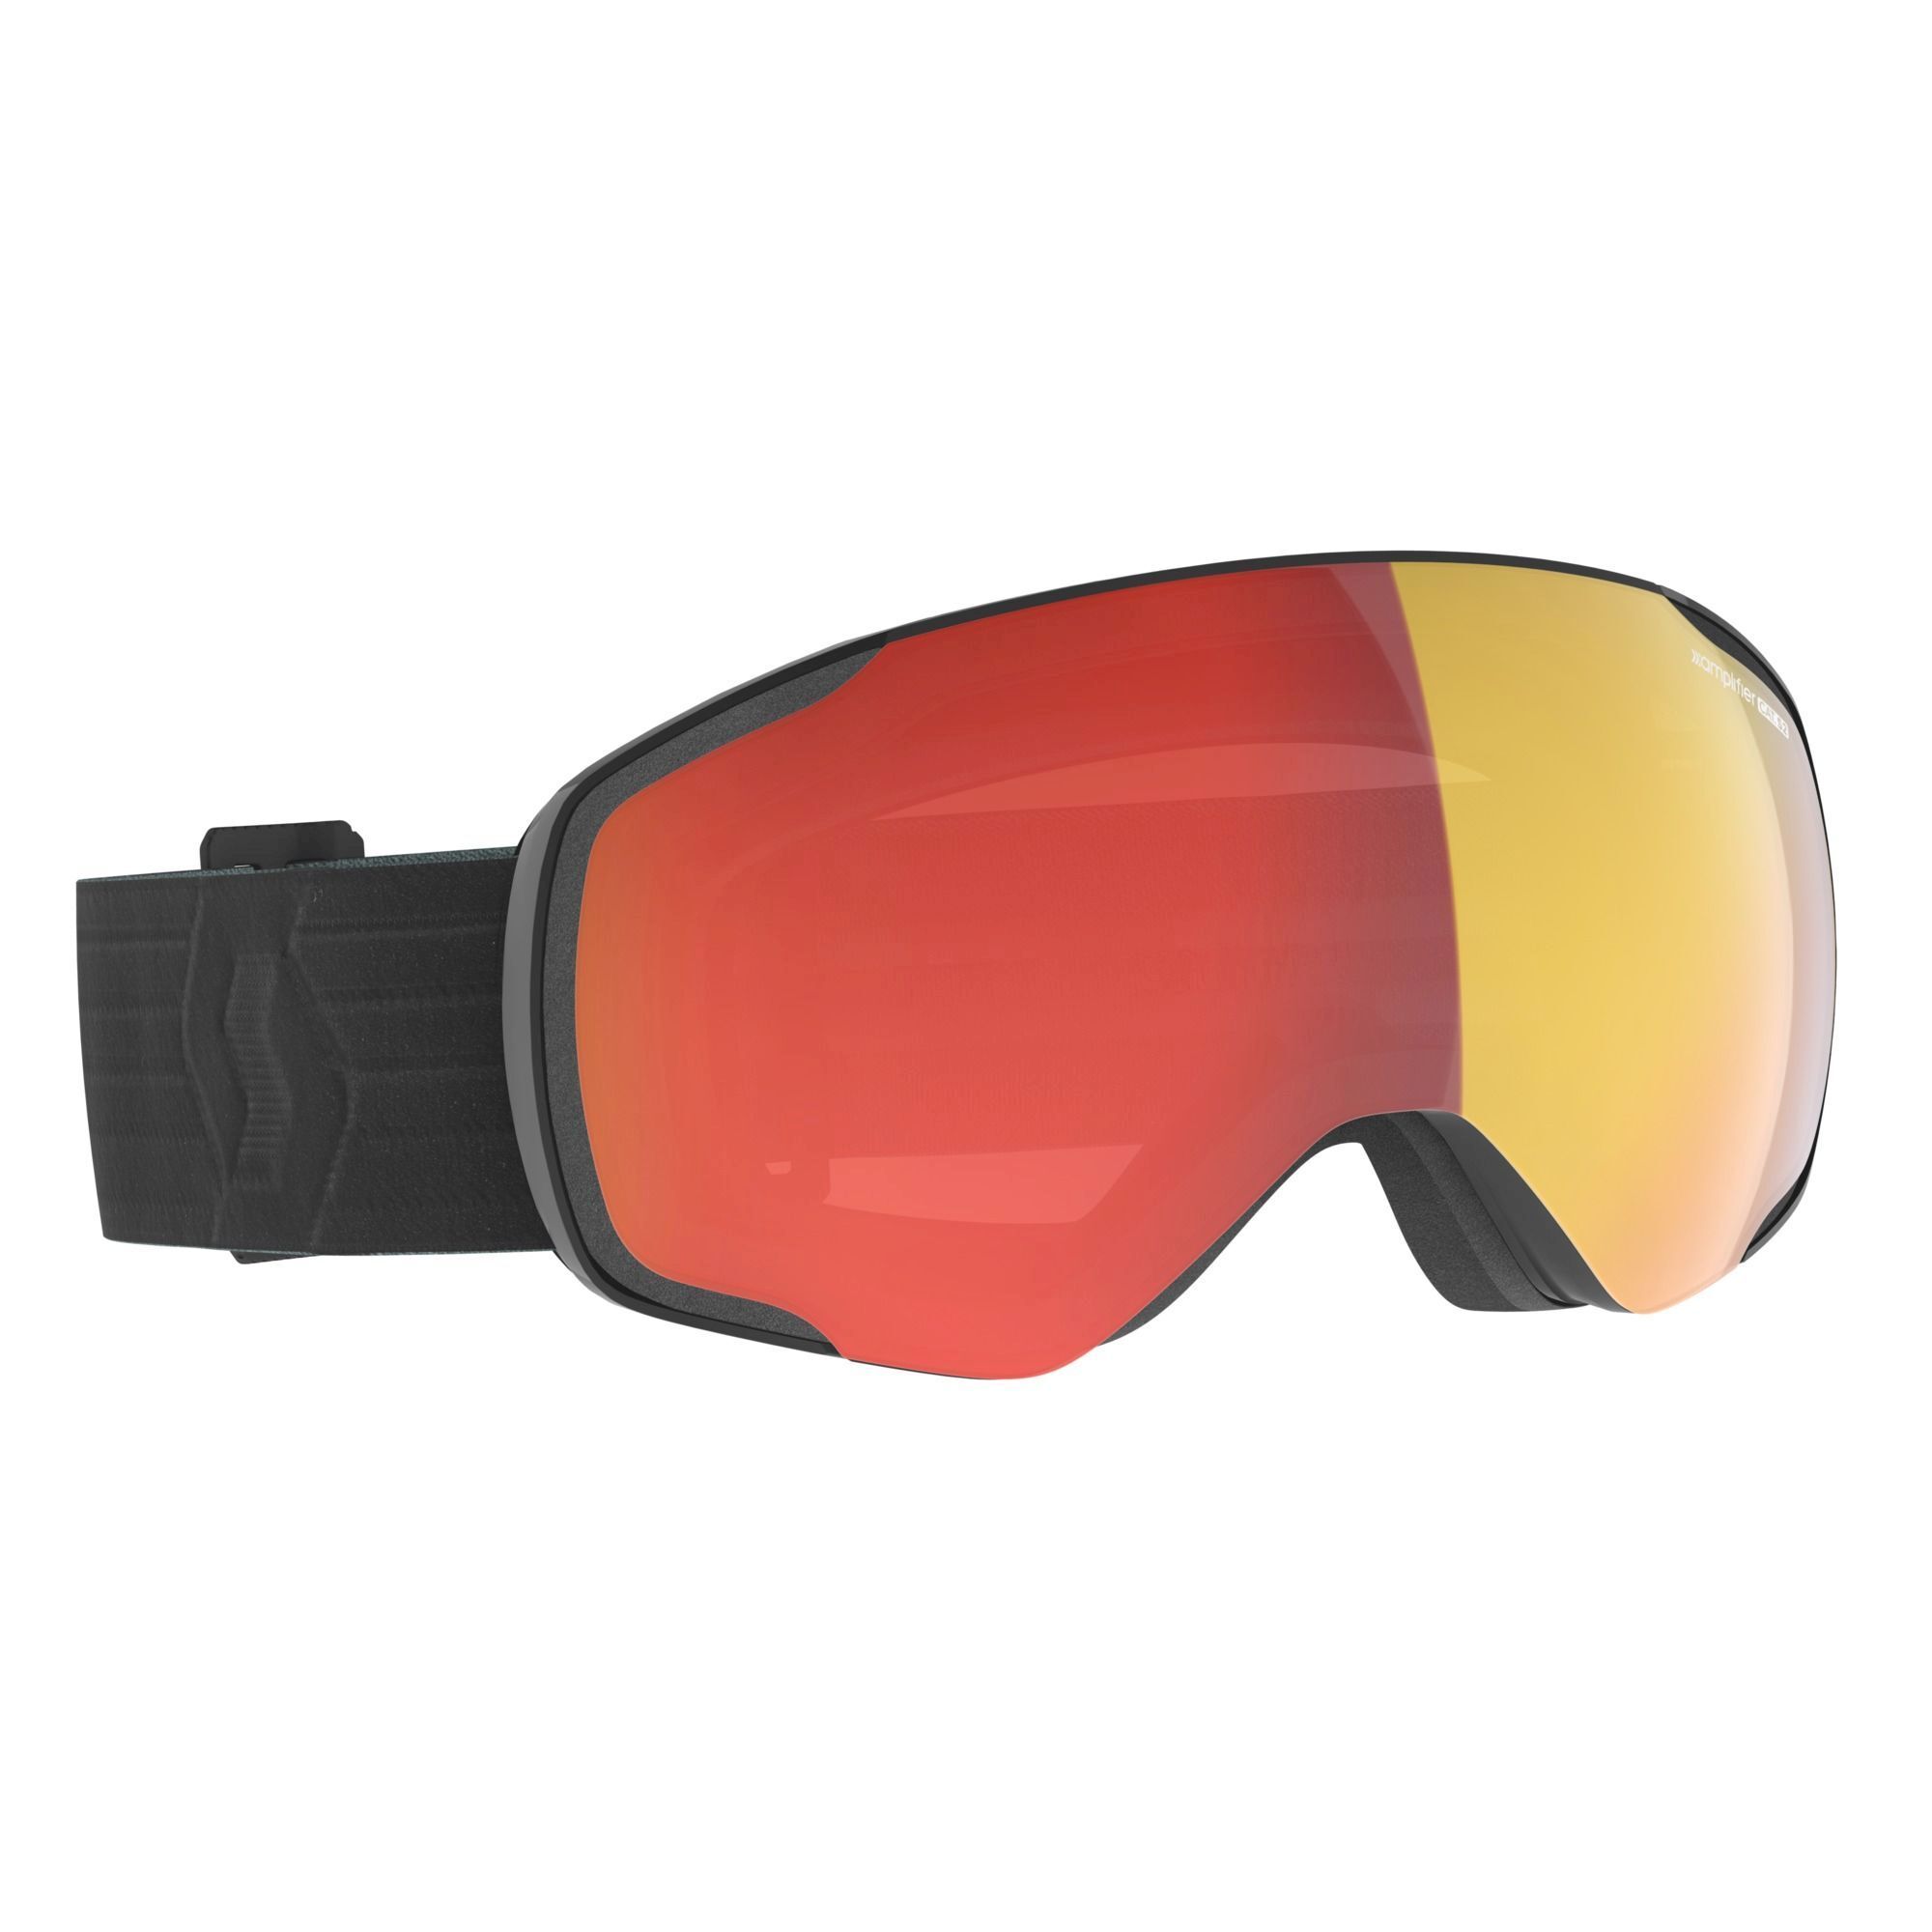 Scott Vapor - Ski goggles